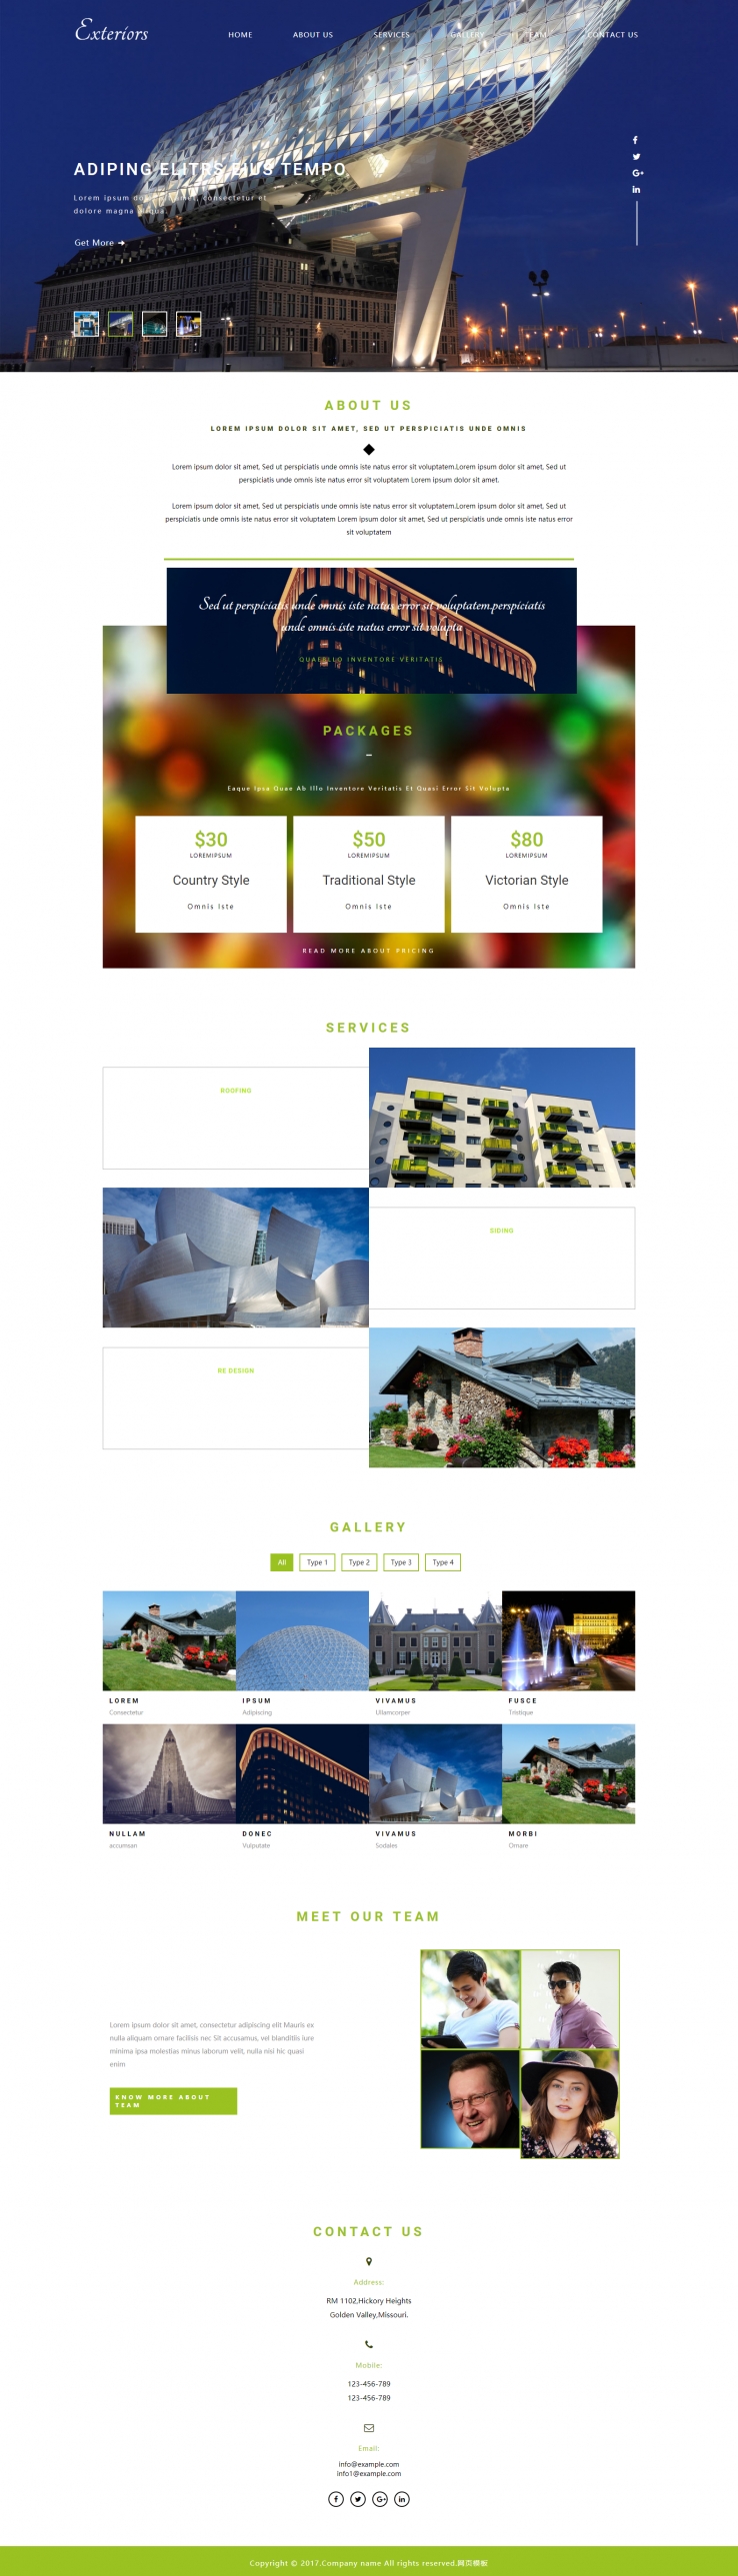 白色宽屏风格的大图幻灯建筑企业网站模板